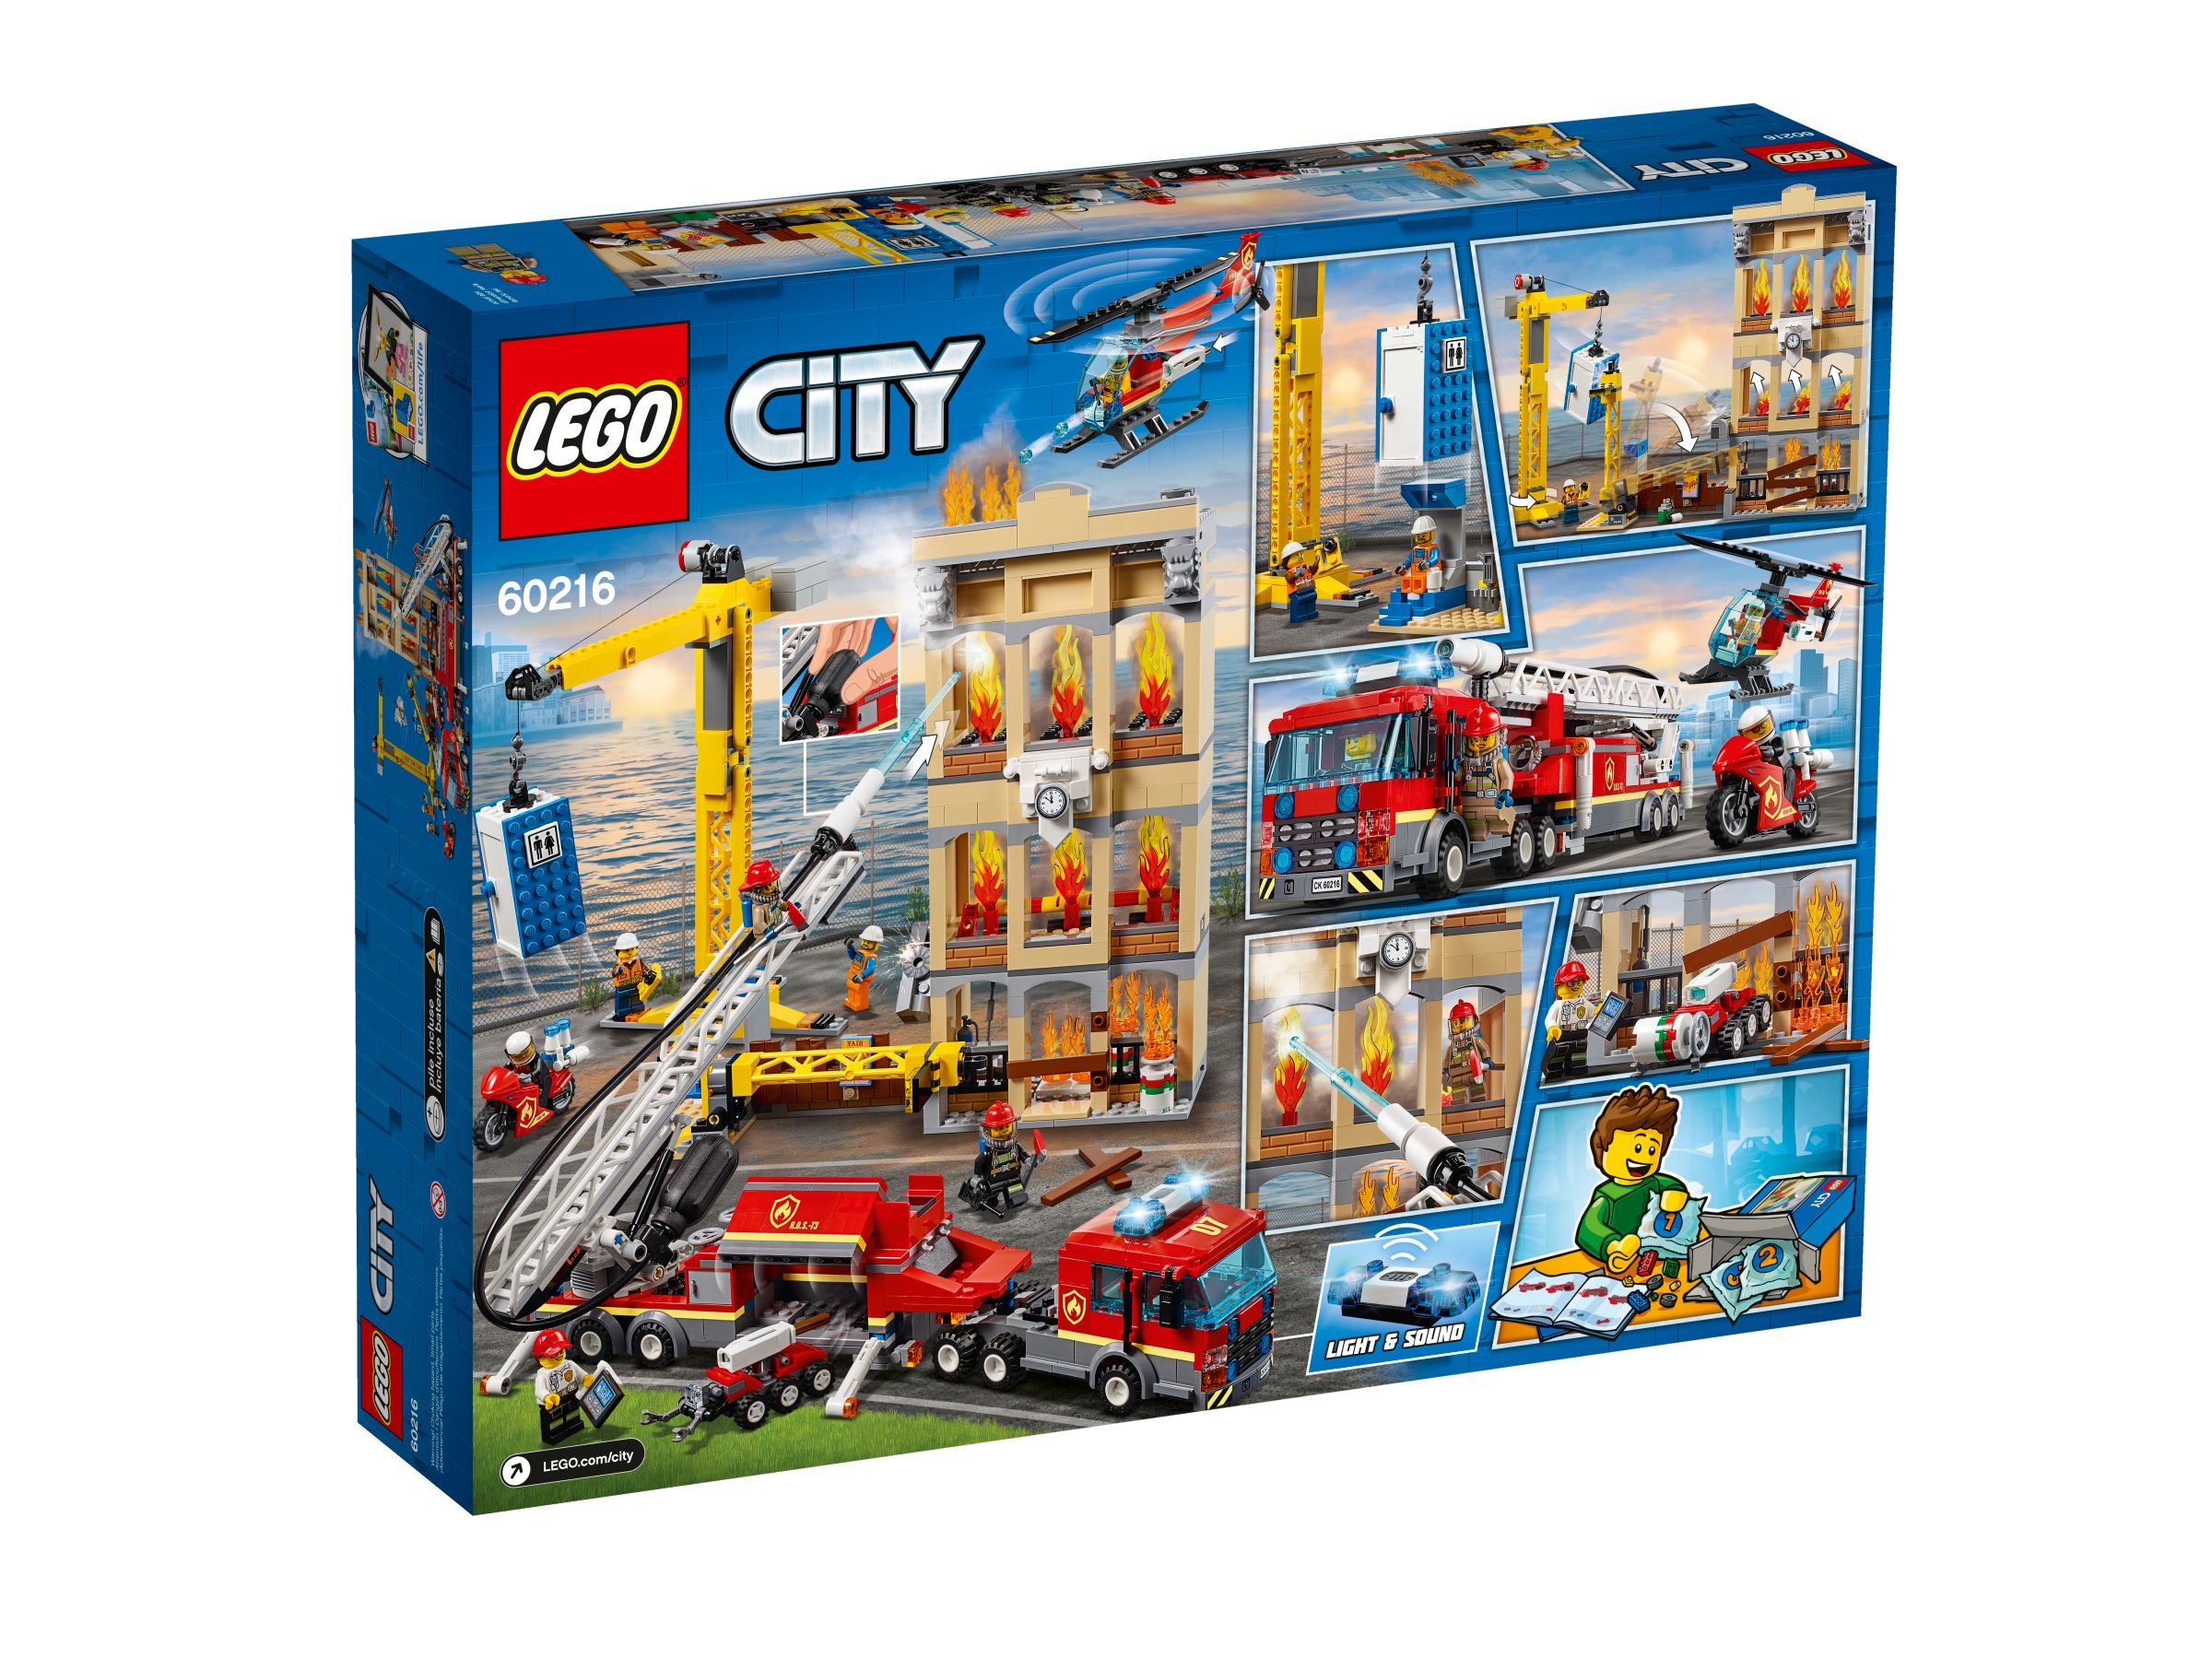 LEGO City 60216 Feuerwehr in der Stadt LEGO_60216_alt4.jpg